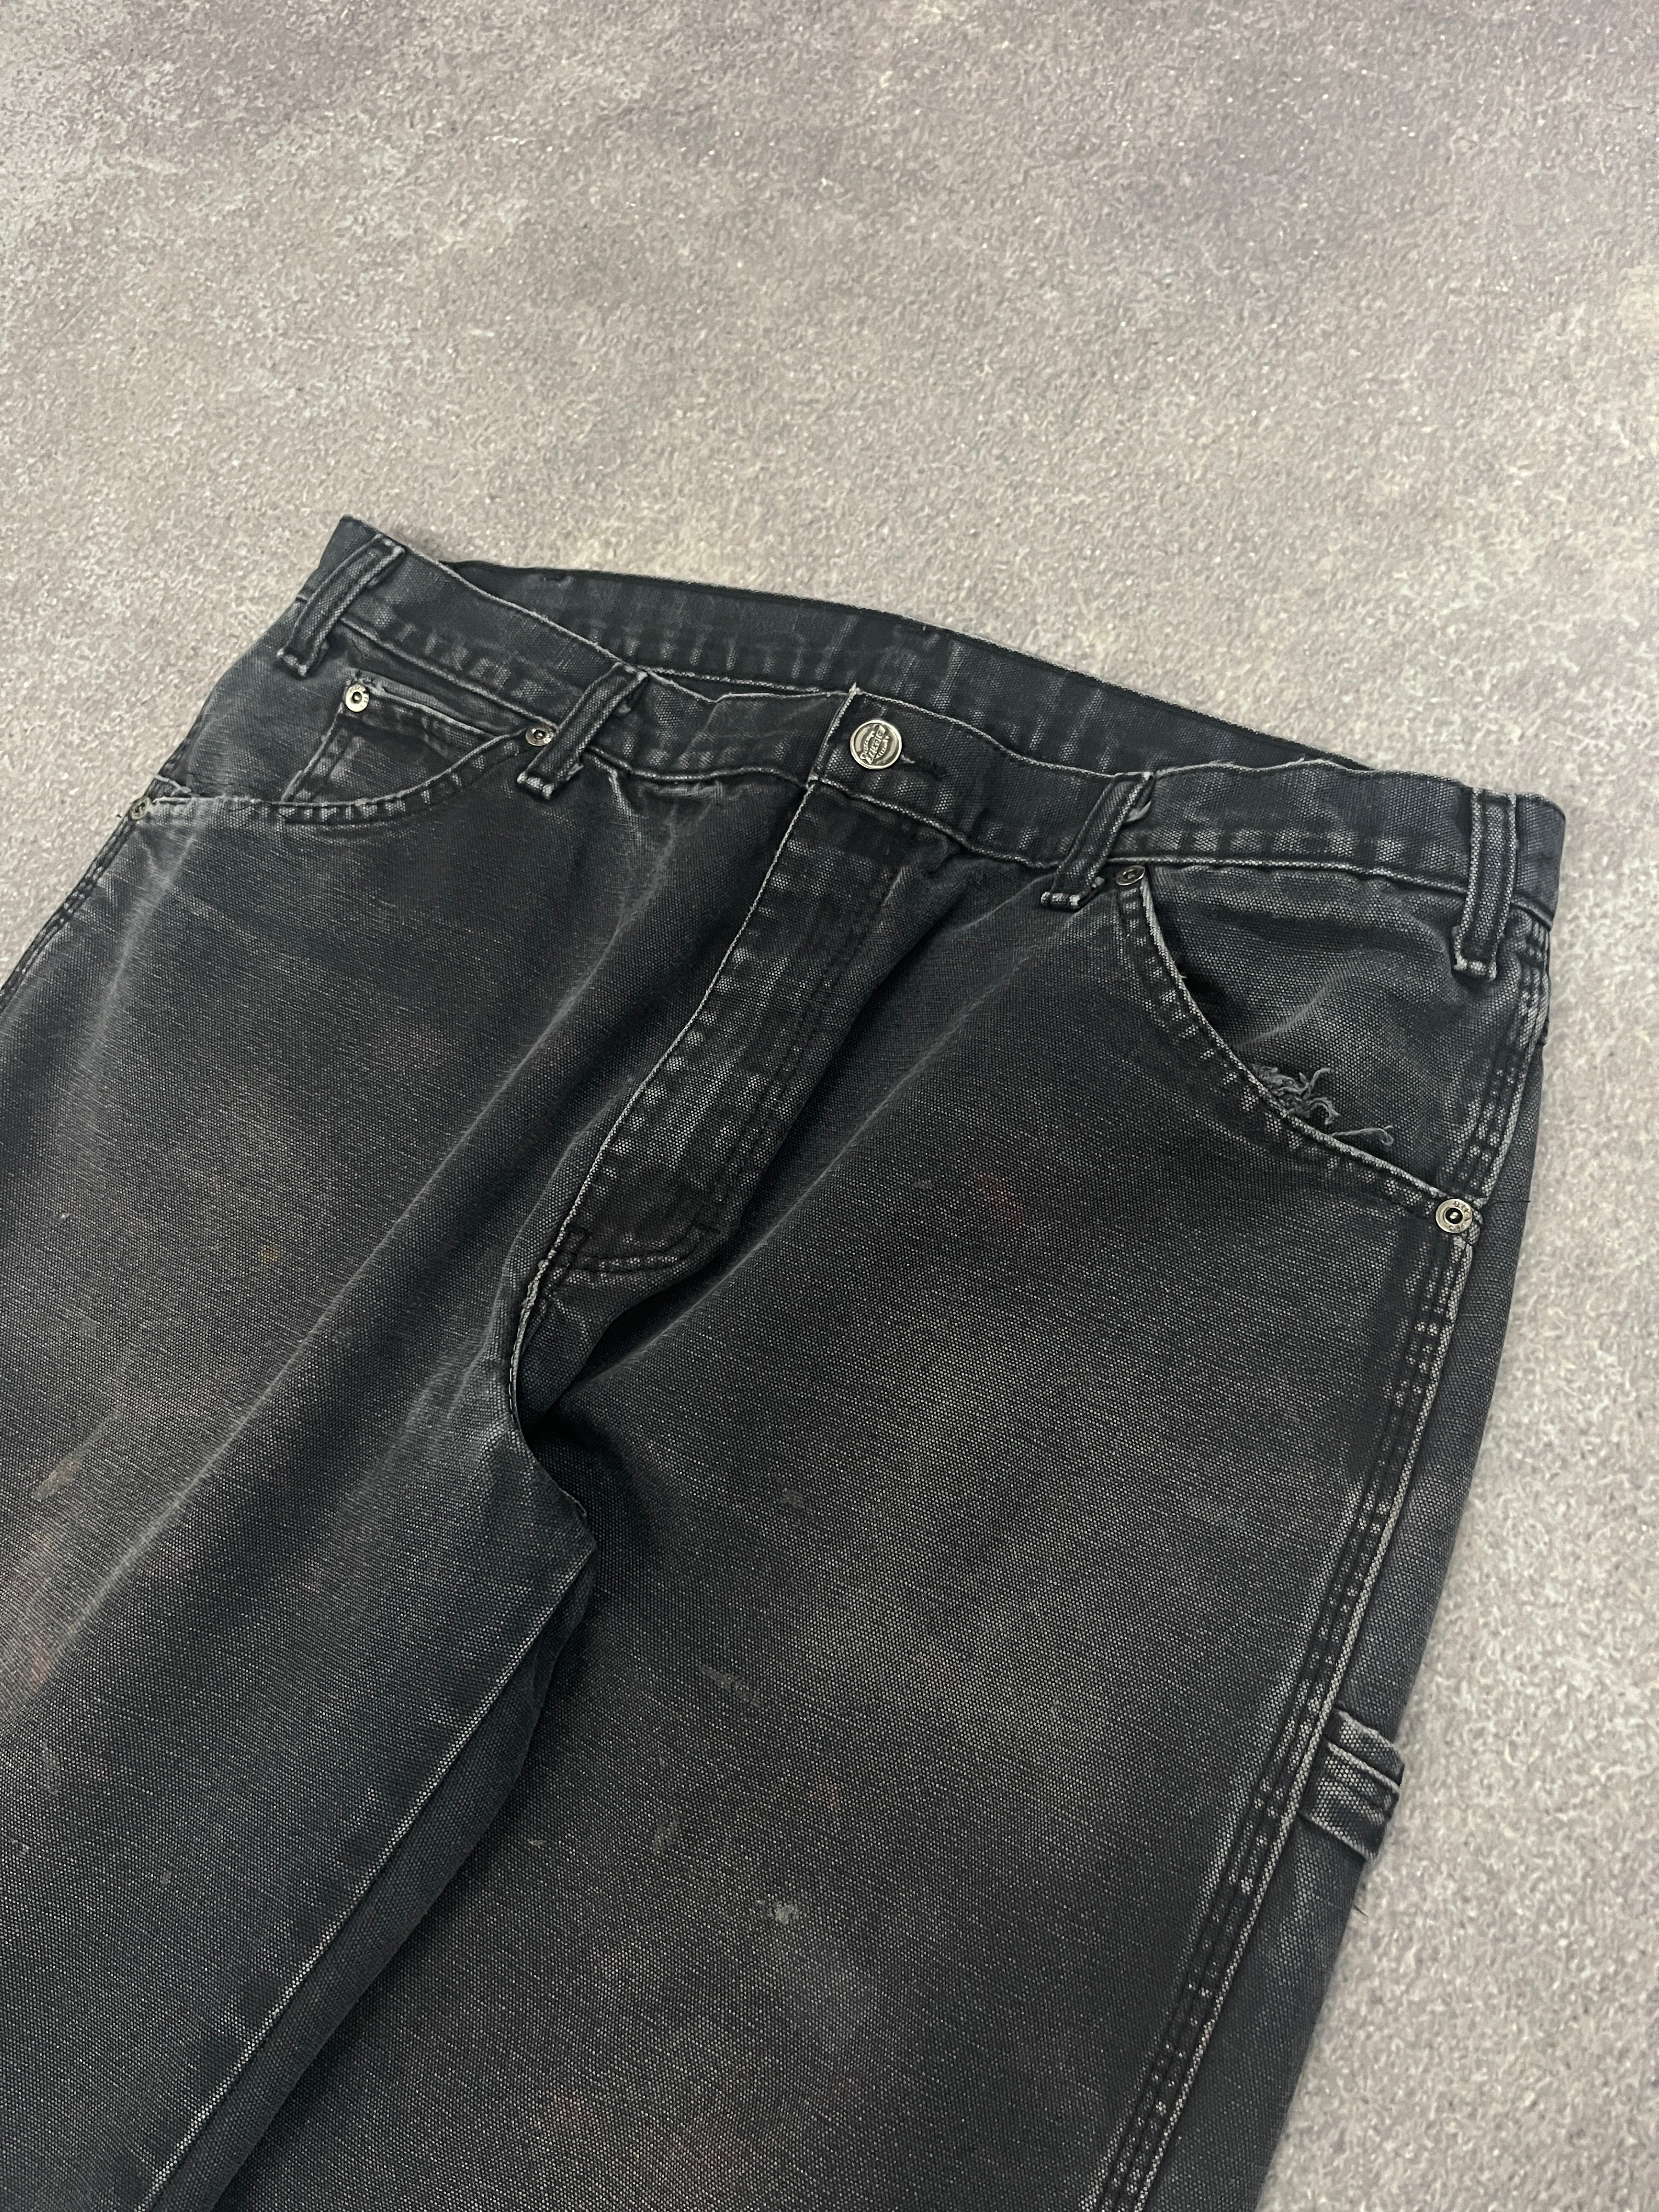 Vintage Dickies Carpenter Pants Black // W34 L32 - RHAGHOUSE VINTAGE